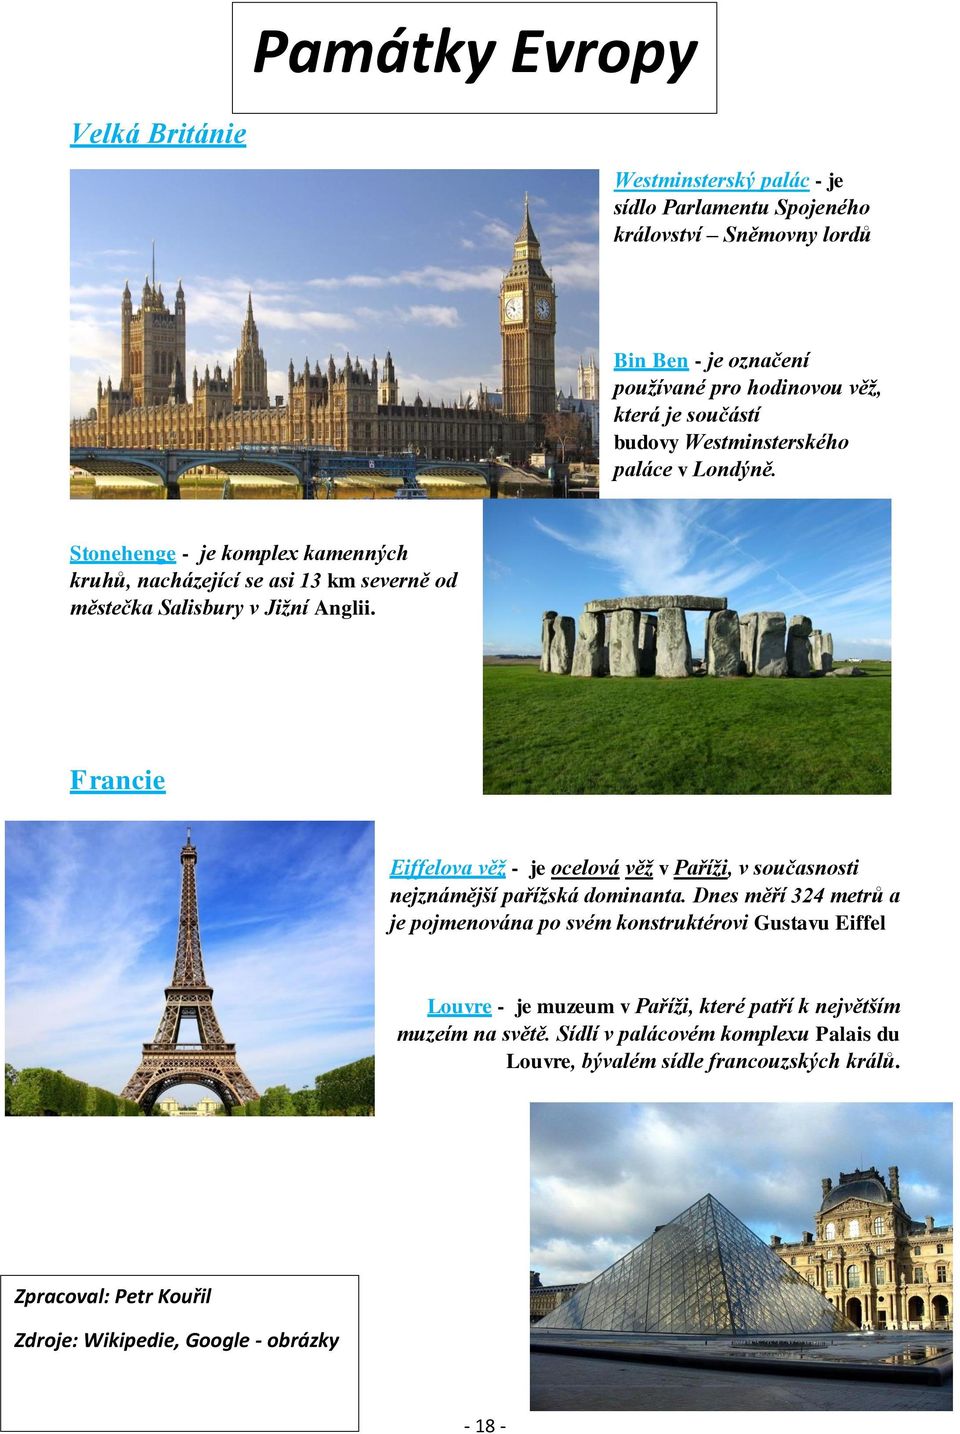 Francie Eiffelova věž - je ocelová věž v Paříži, v současnosti nejznámější pařížská dominanta.